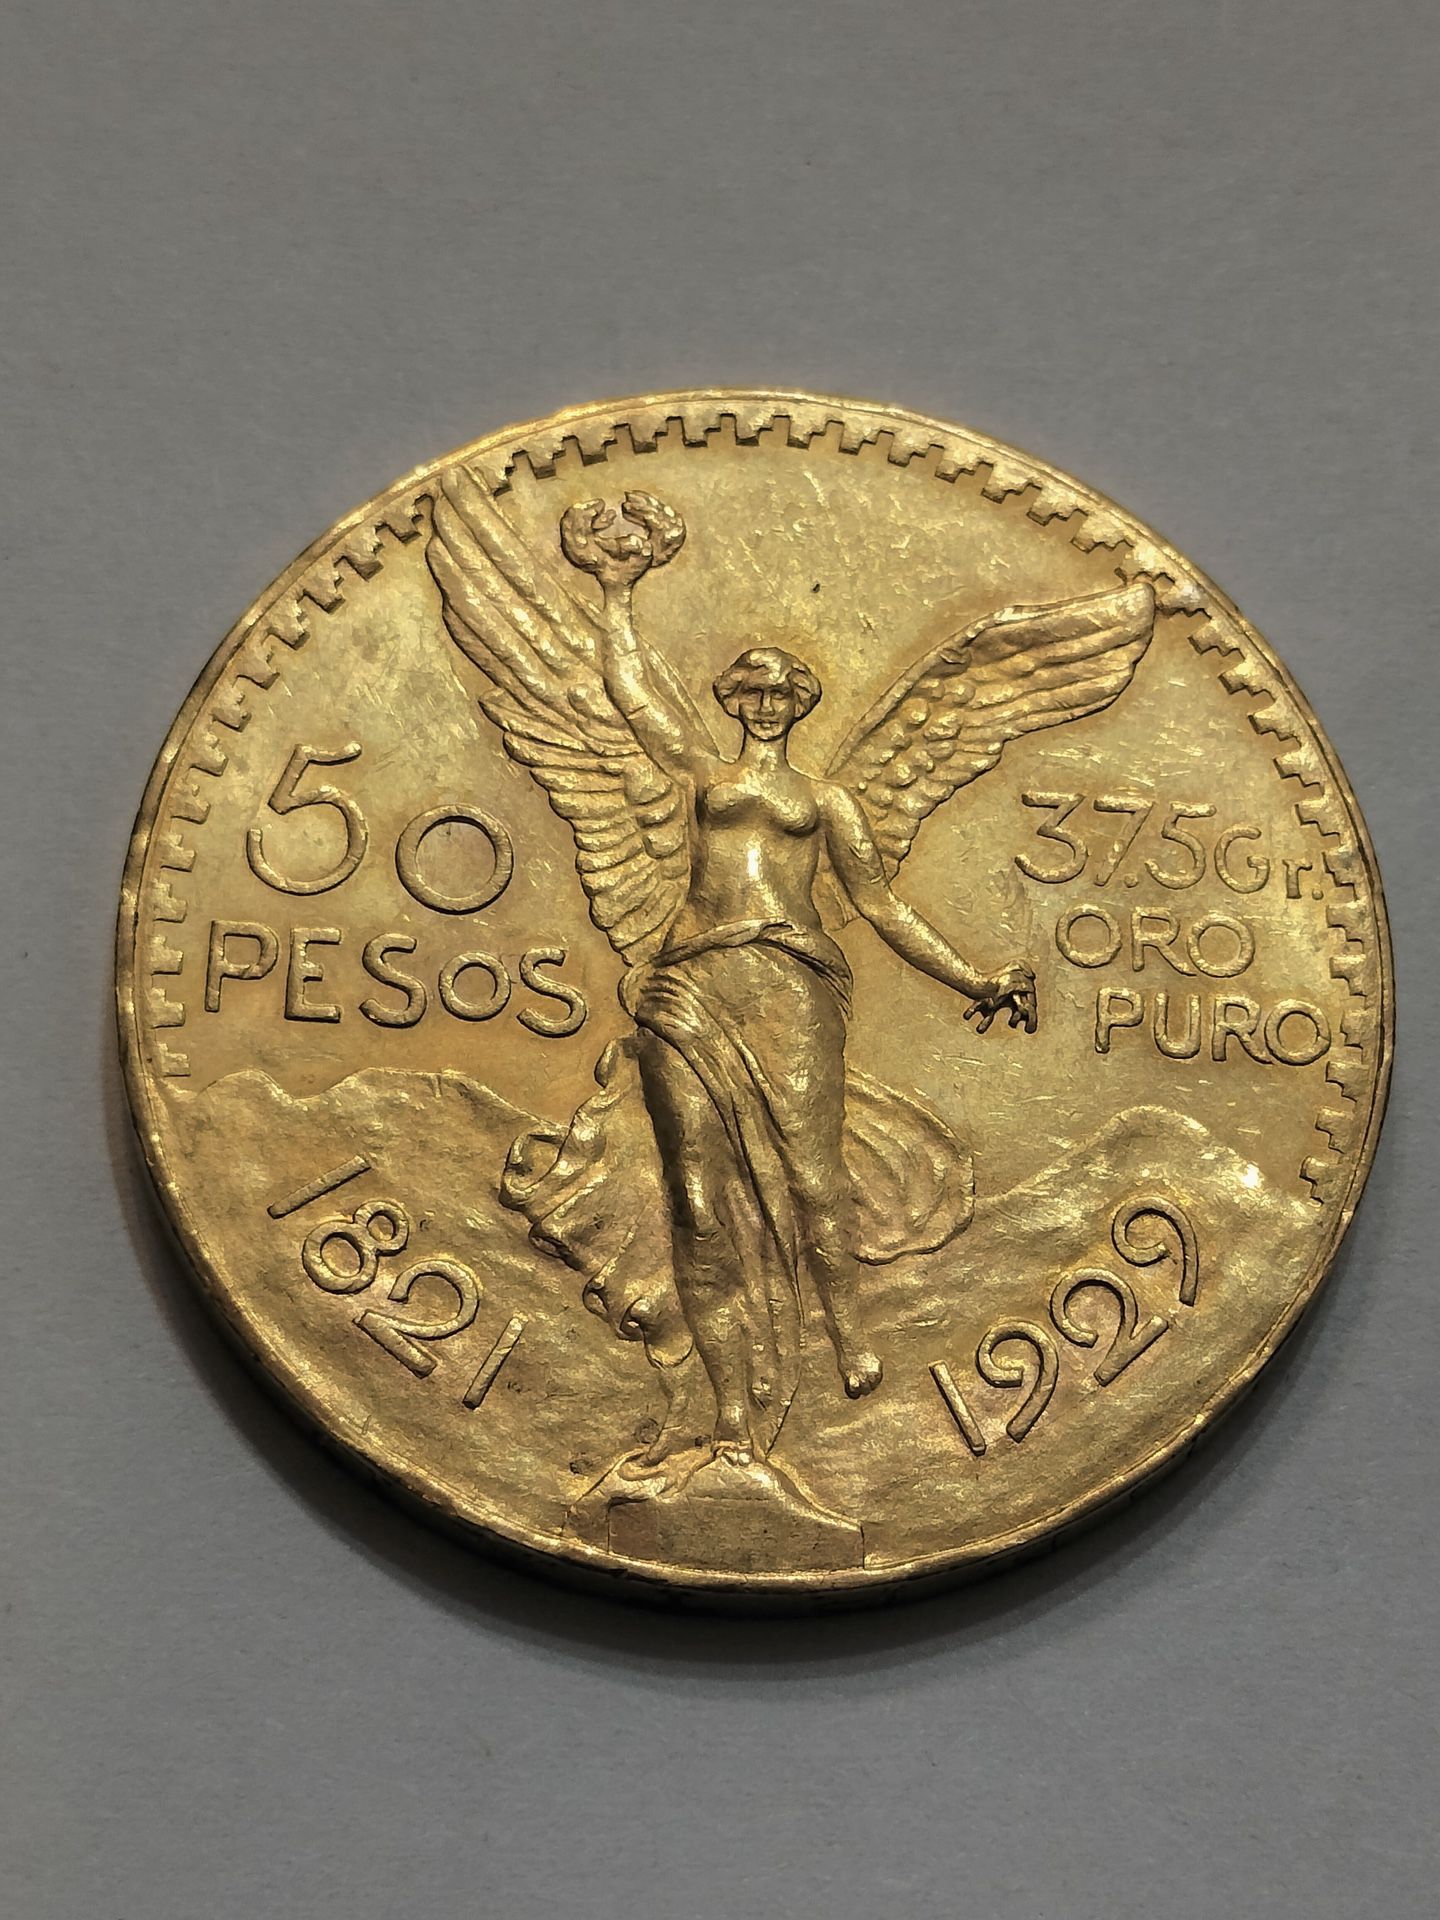 1929 Mexico Gold 50 Pesos Centenario Coin / 100% Original Gold Coin